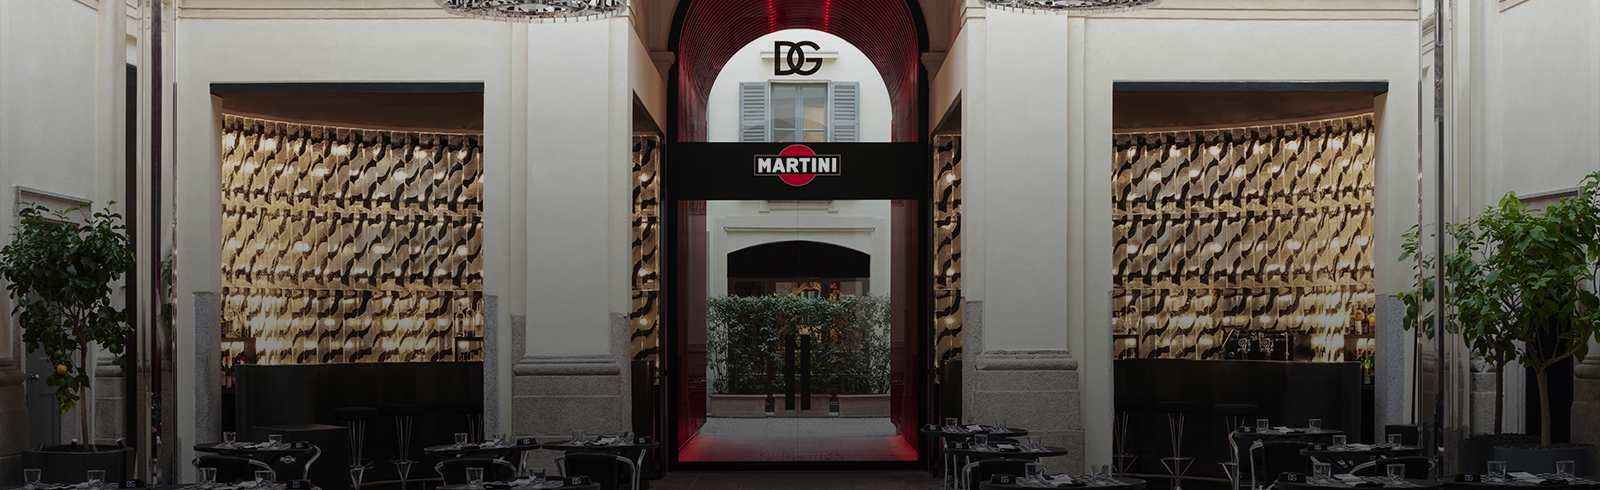 DG MARTINI®  Dolce&Gabbana